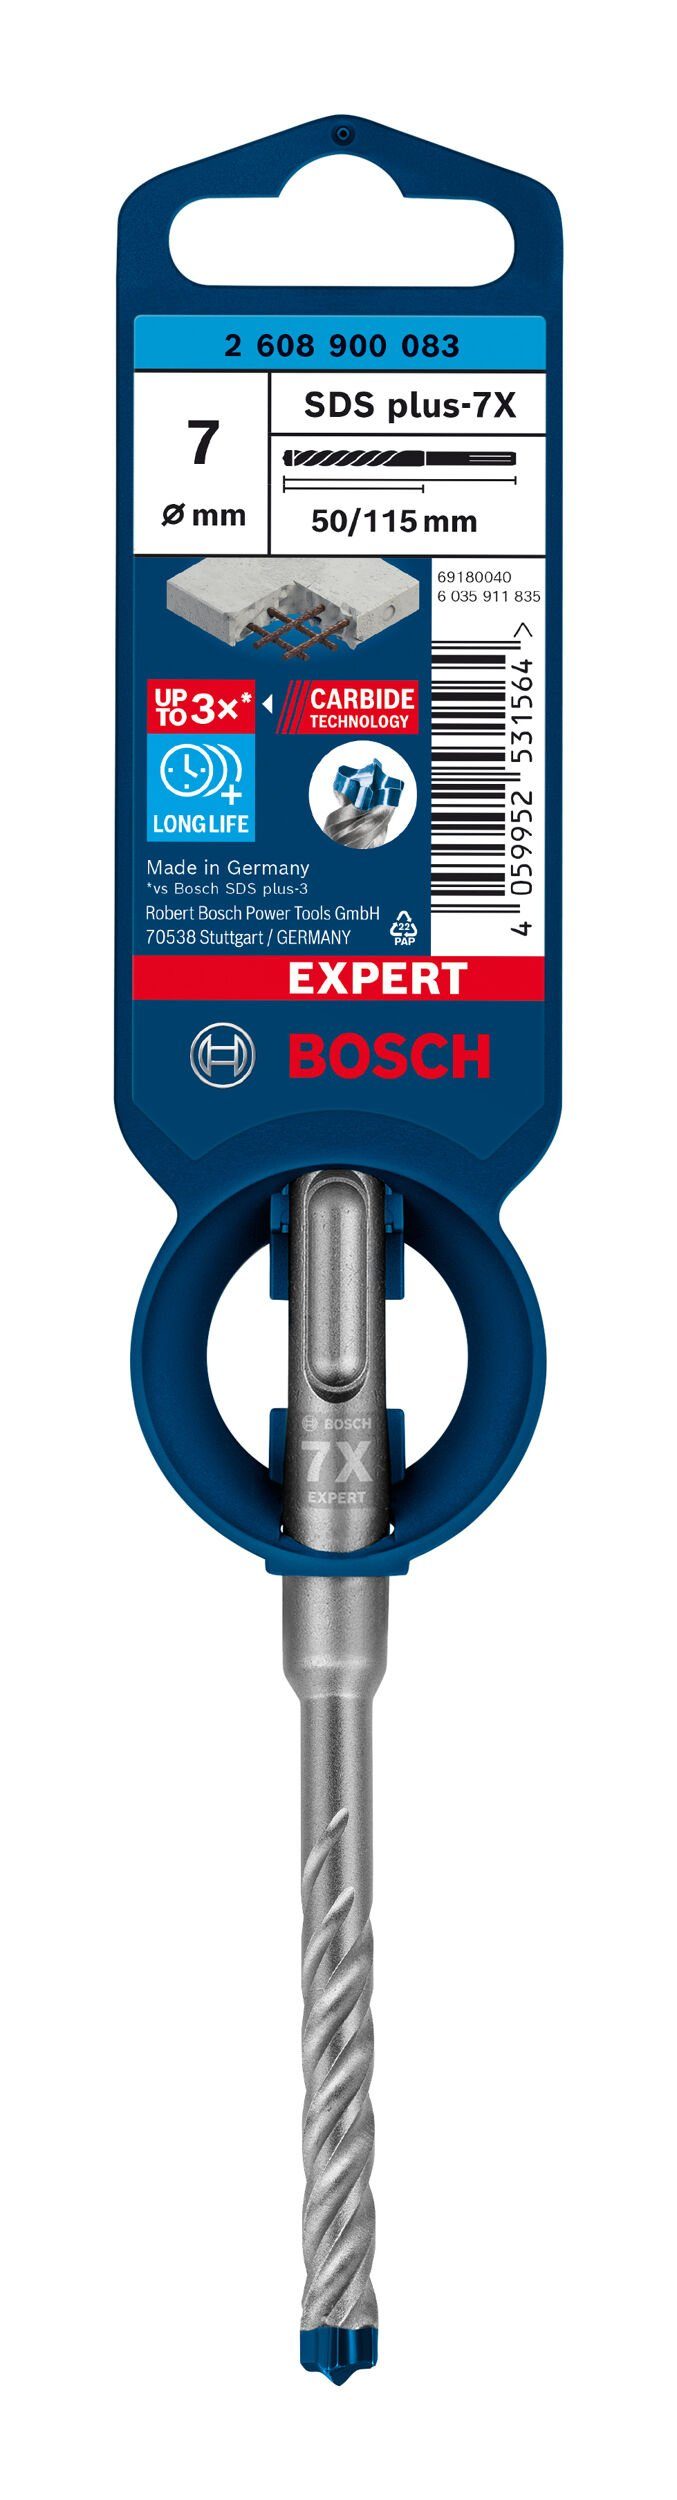 BOSCH Universalbohrer plus-7X, x Expert - 1er-Pack mm Hammerbohrer 115 7 x SDS 50 